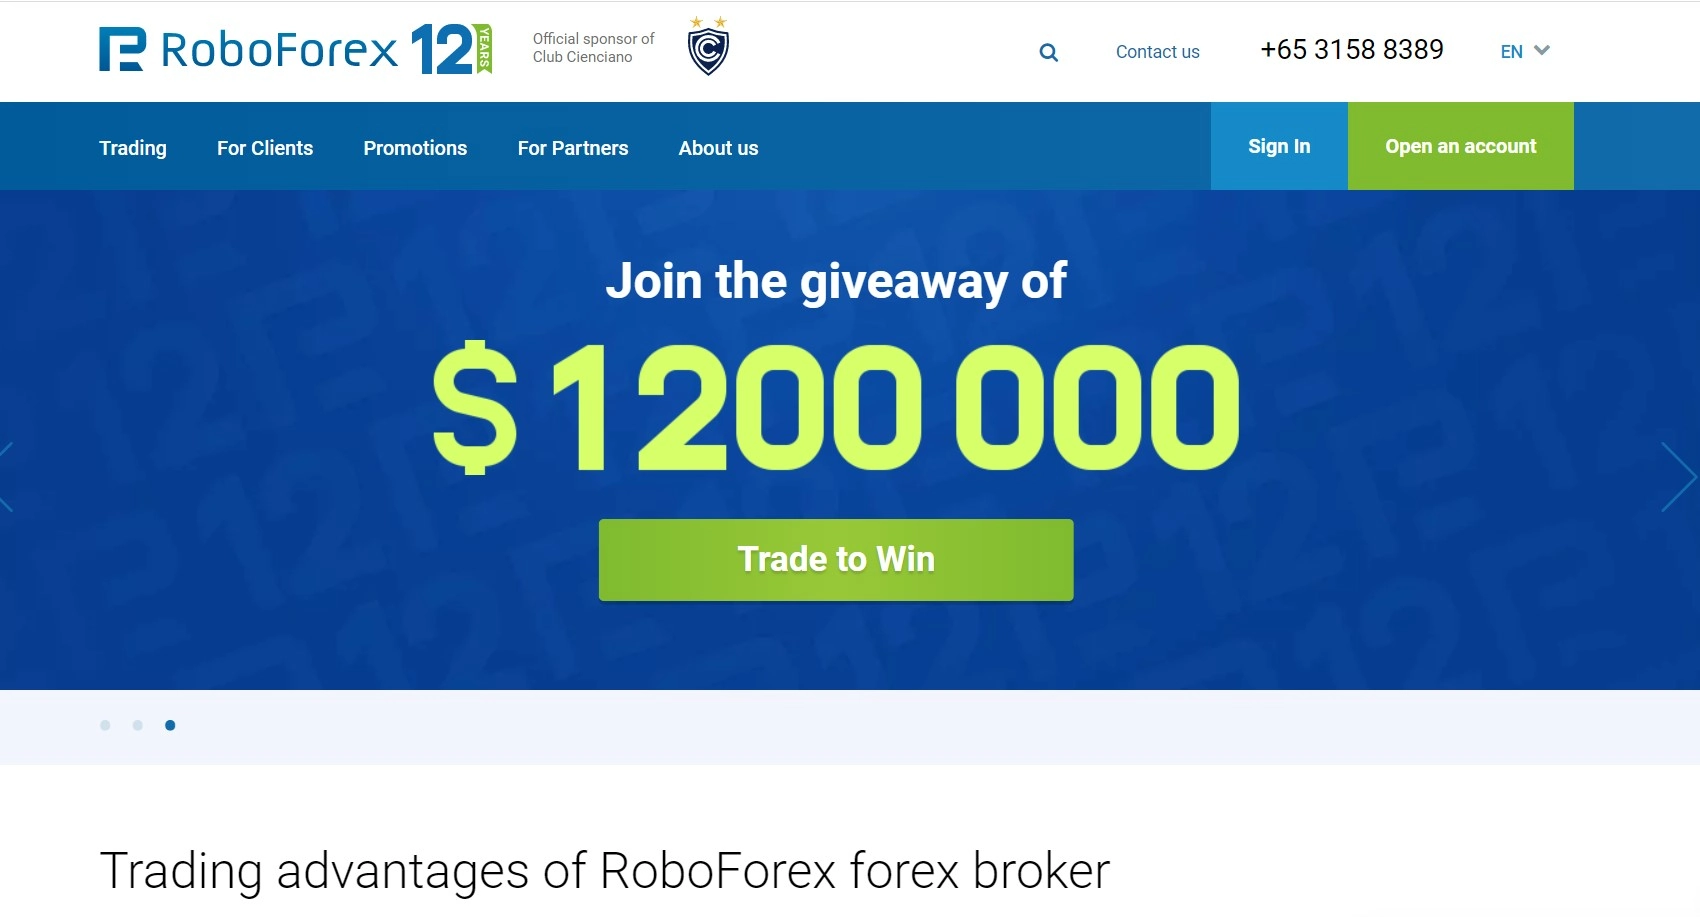 O site oficial do RoboForex